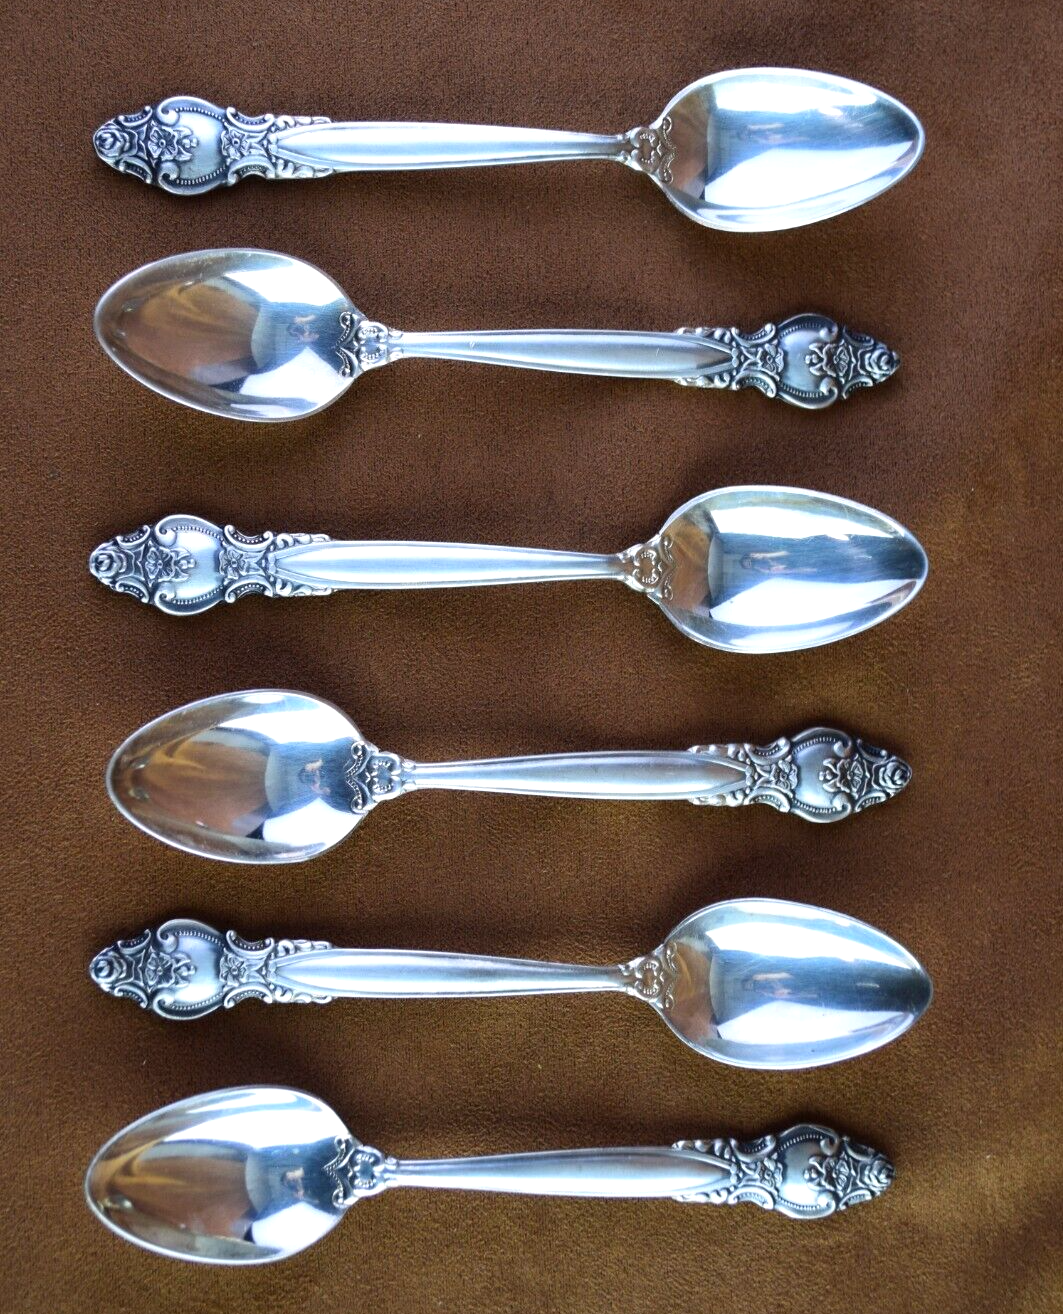 Vintage Soviet Set of 6 Tea Spoons Wild Rose Pattern Vintage Spoons Zish Vintage